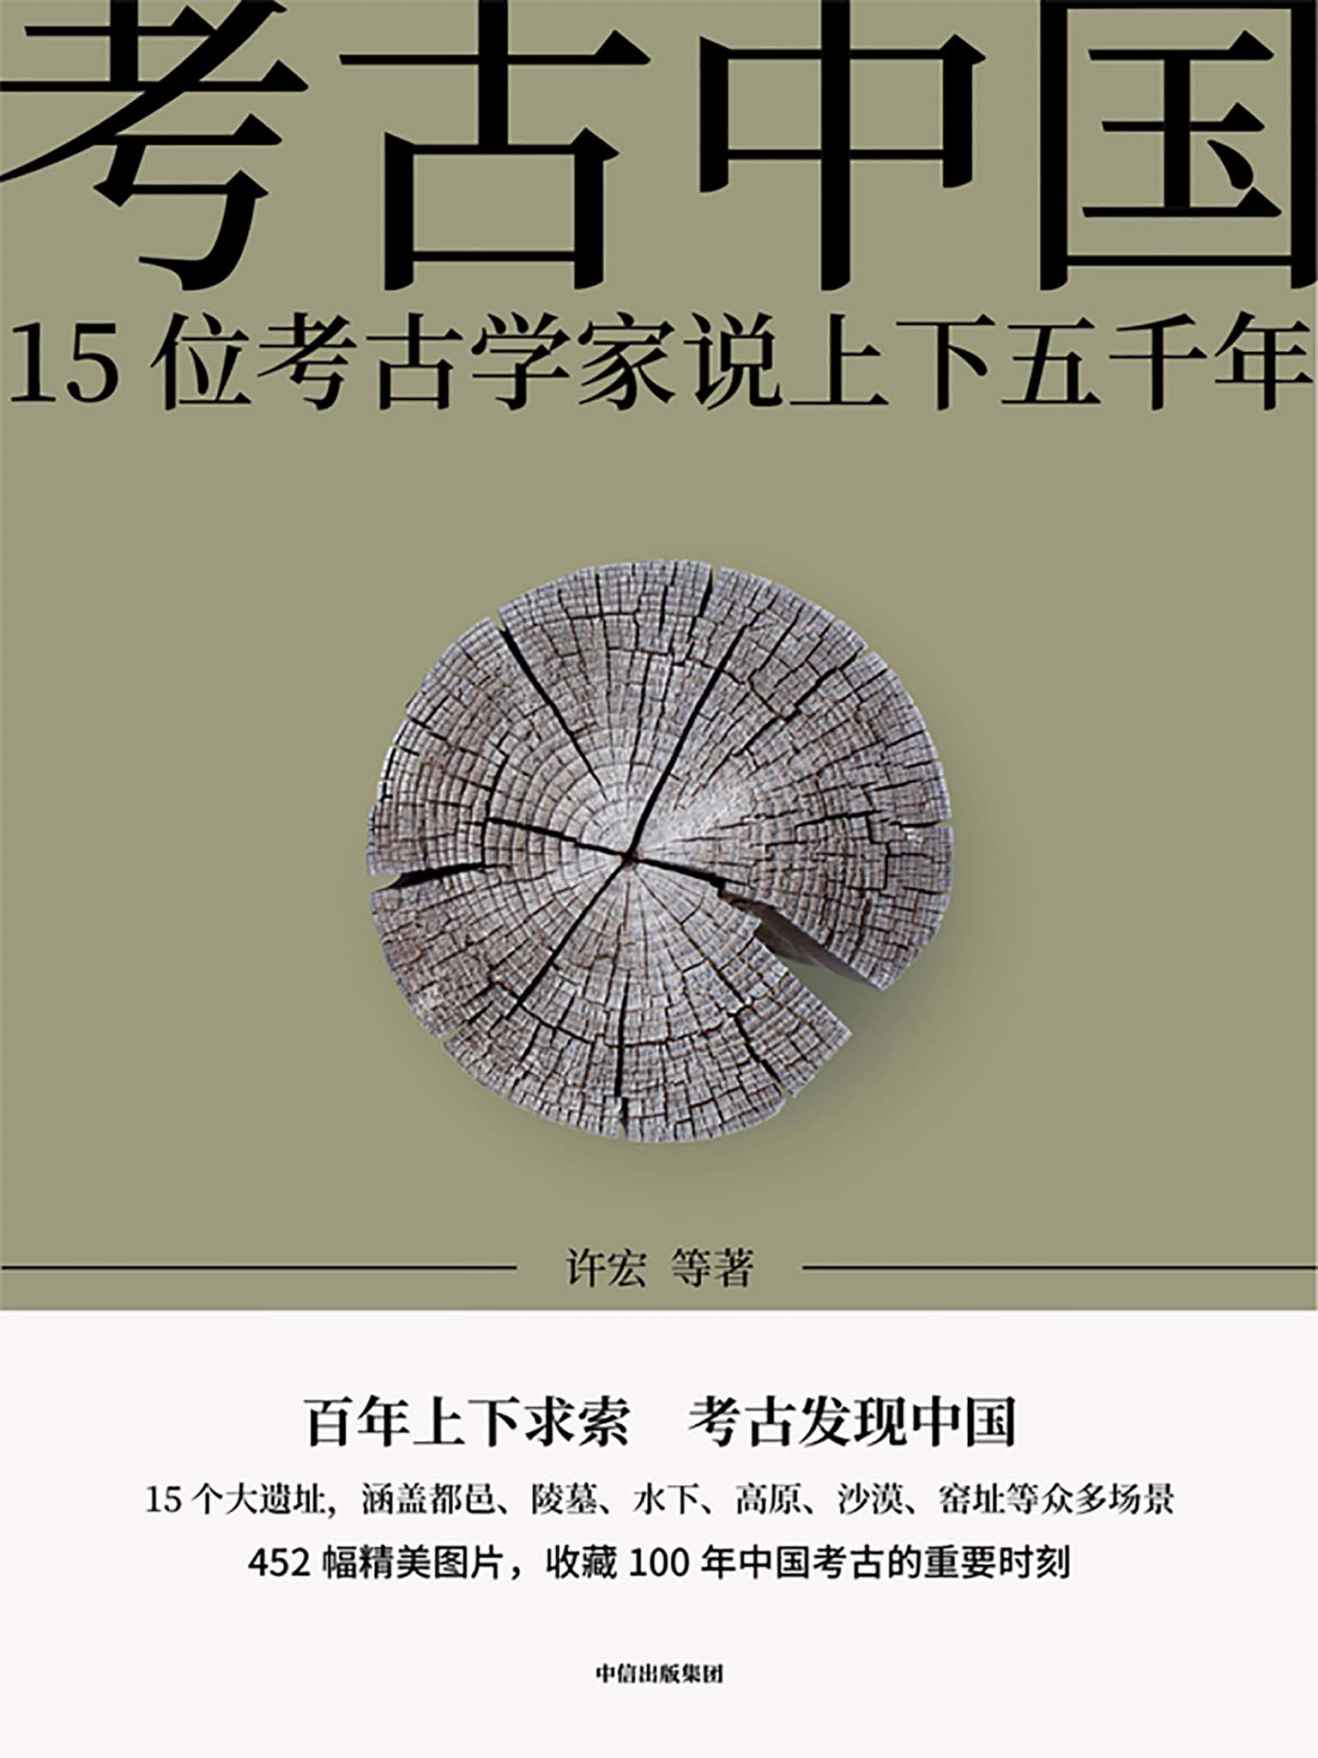 《考古中国》-azw3,mobi,epub,pdf,txt,kindle电子书免费下载